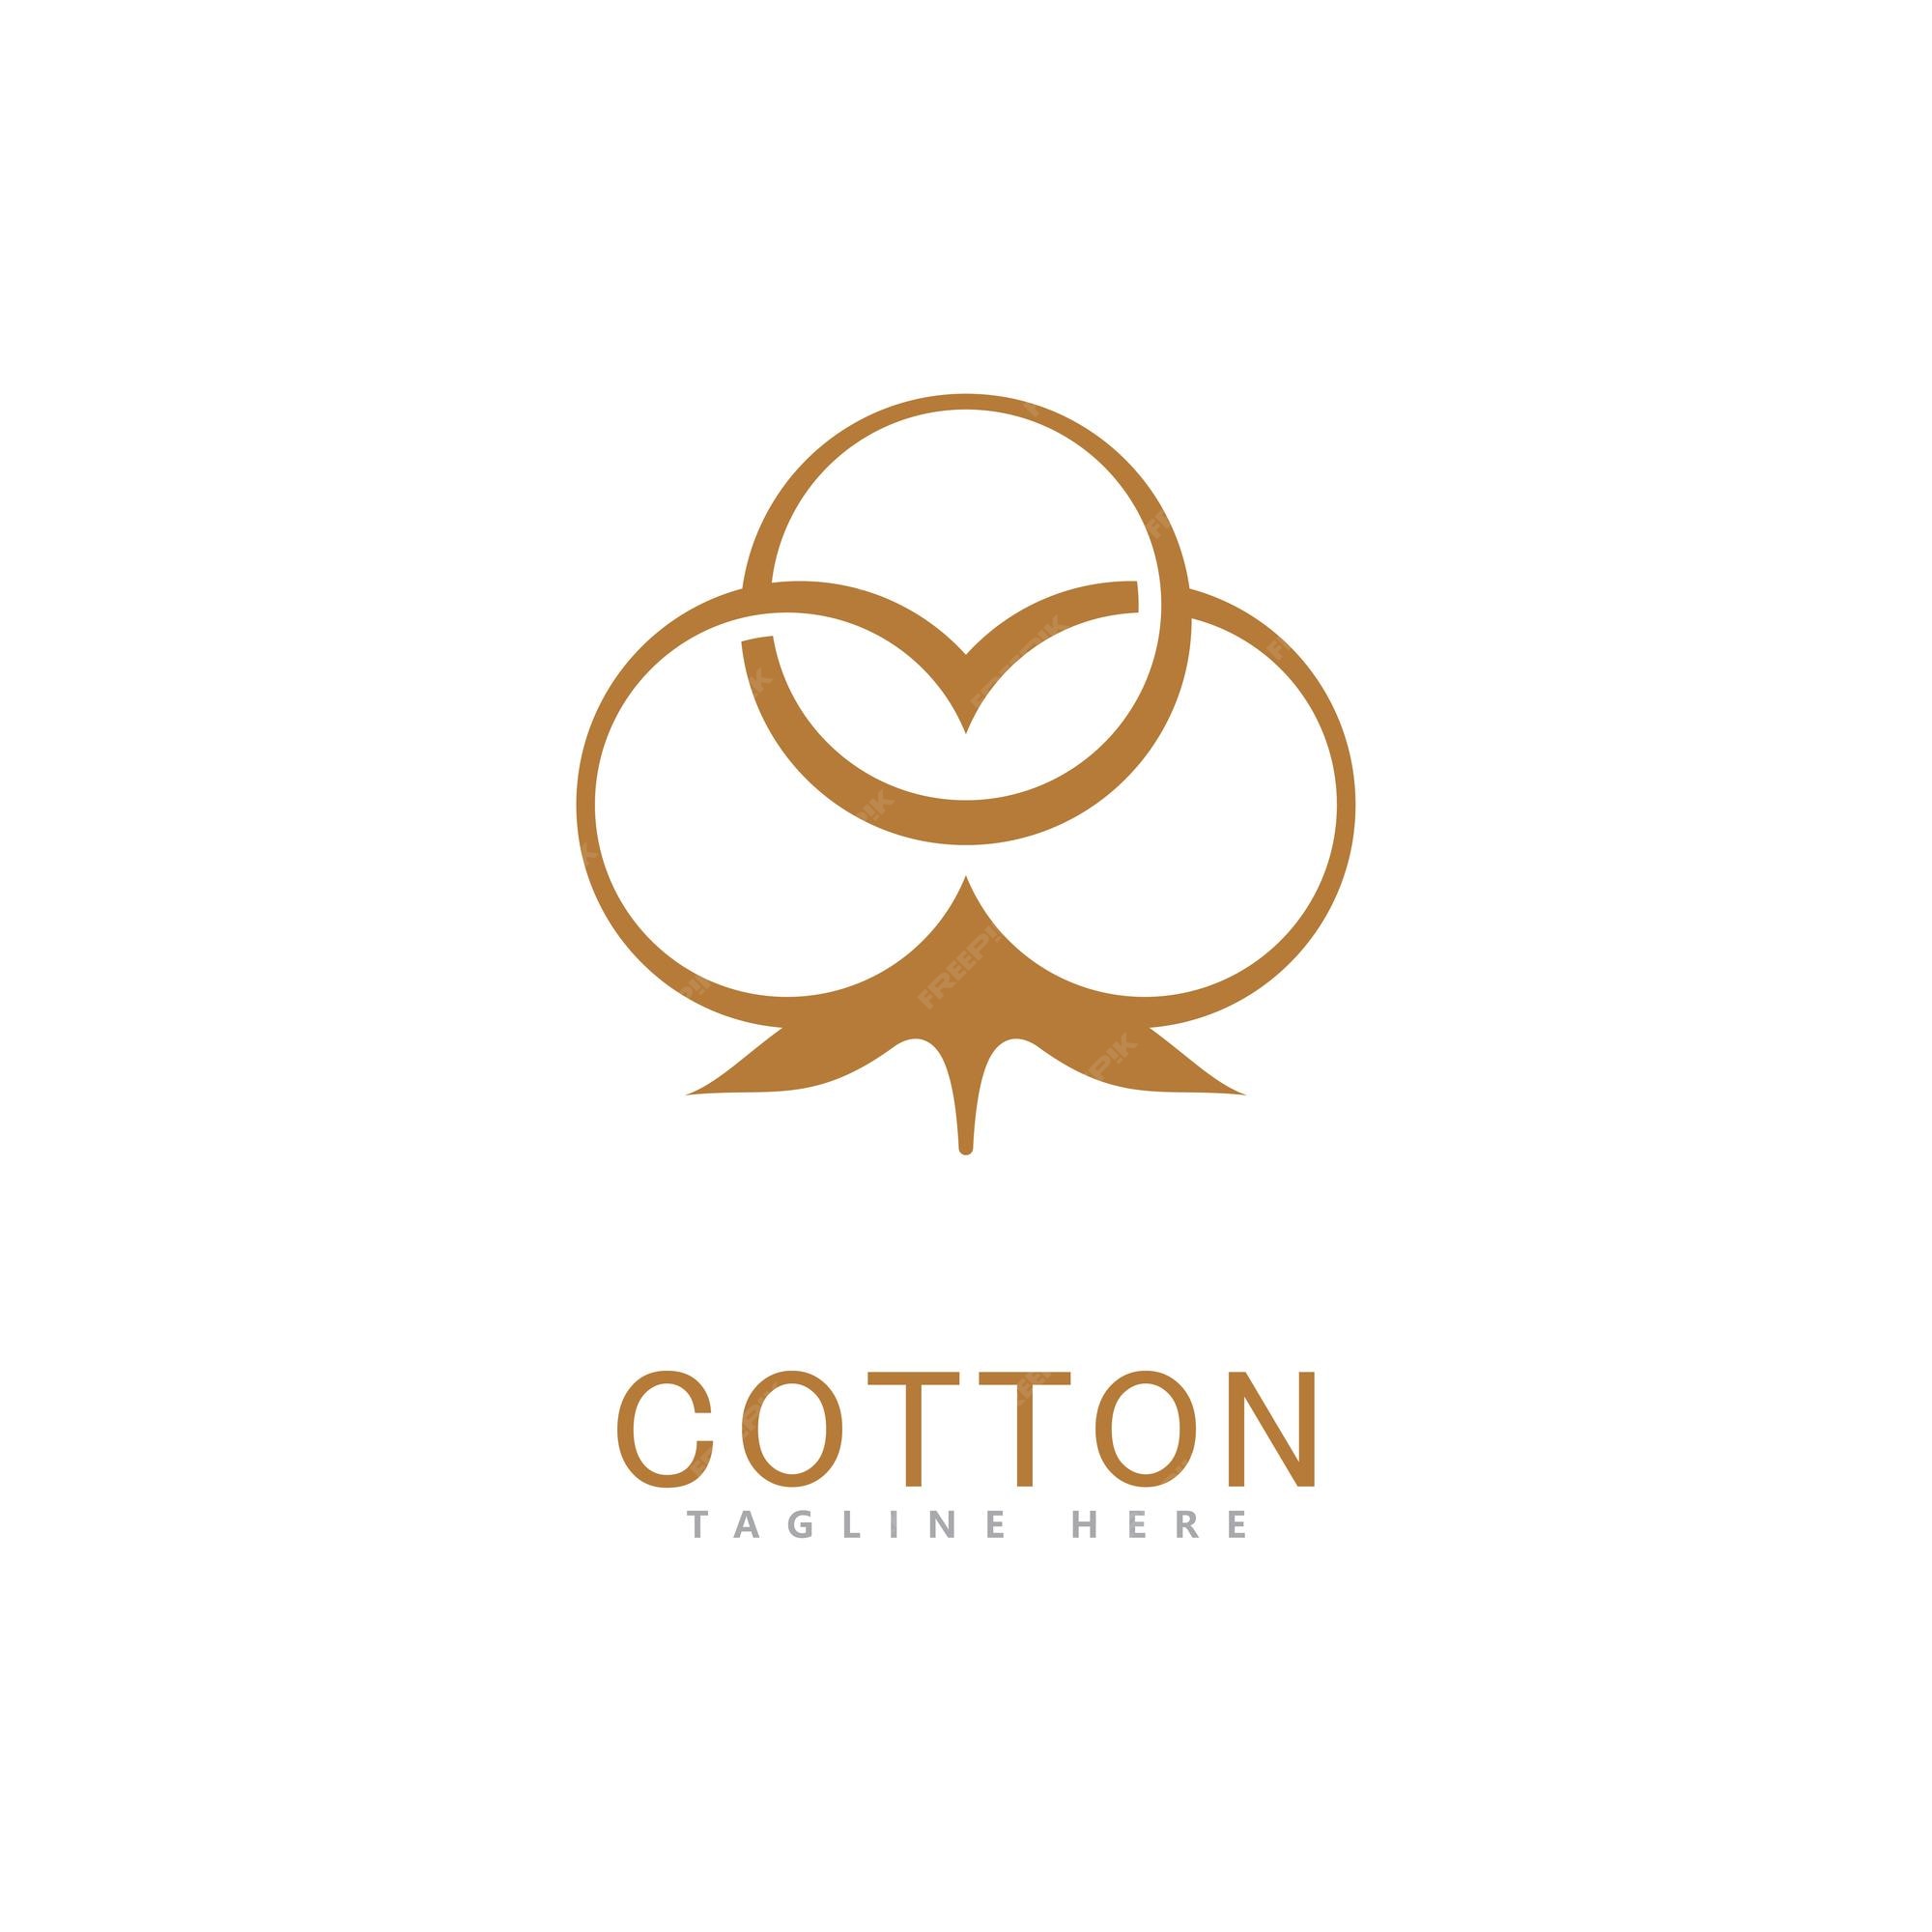 Premium Vector | Cotton logo vector template design